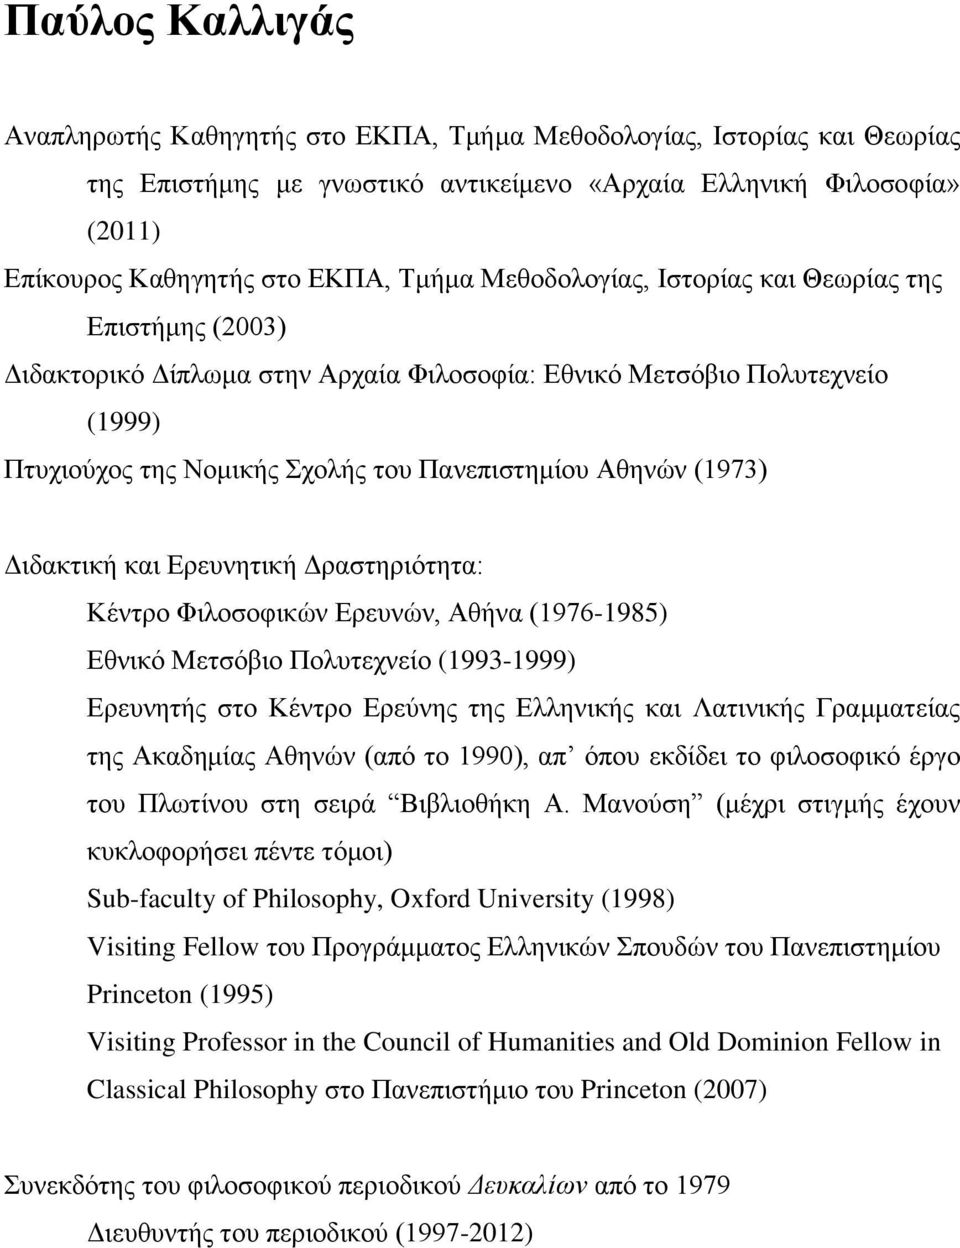 Διδακτική και Ερευνητική Δραστηριότητα: Κέντρο Φιλοσοφικών Ερευνών, Αθήνα (1976-1985) Εθνικό Μετσόβιο Πολυτεχνείο (1993-1999) Ερευνητής στο Κέντρο Ερεύνης της Ελληνικής και Λατινικής Γραμματείας της